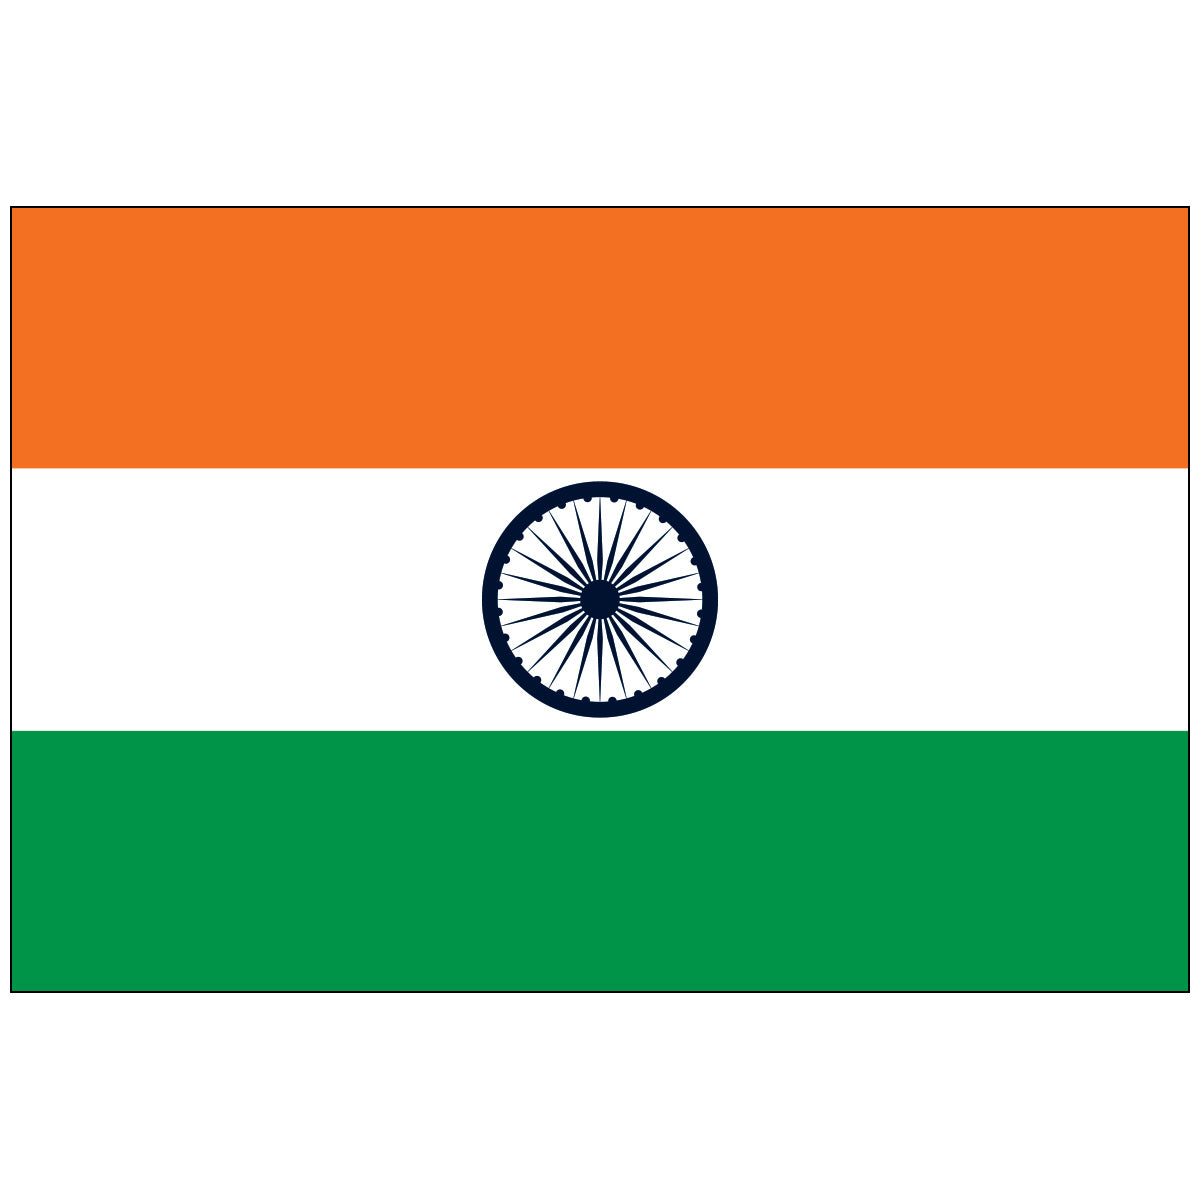 India - World Flag